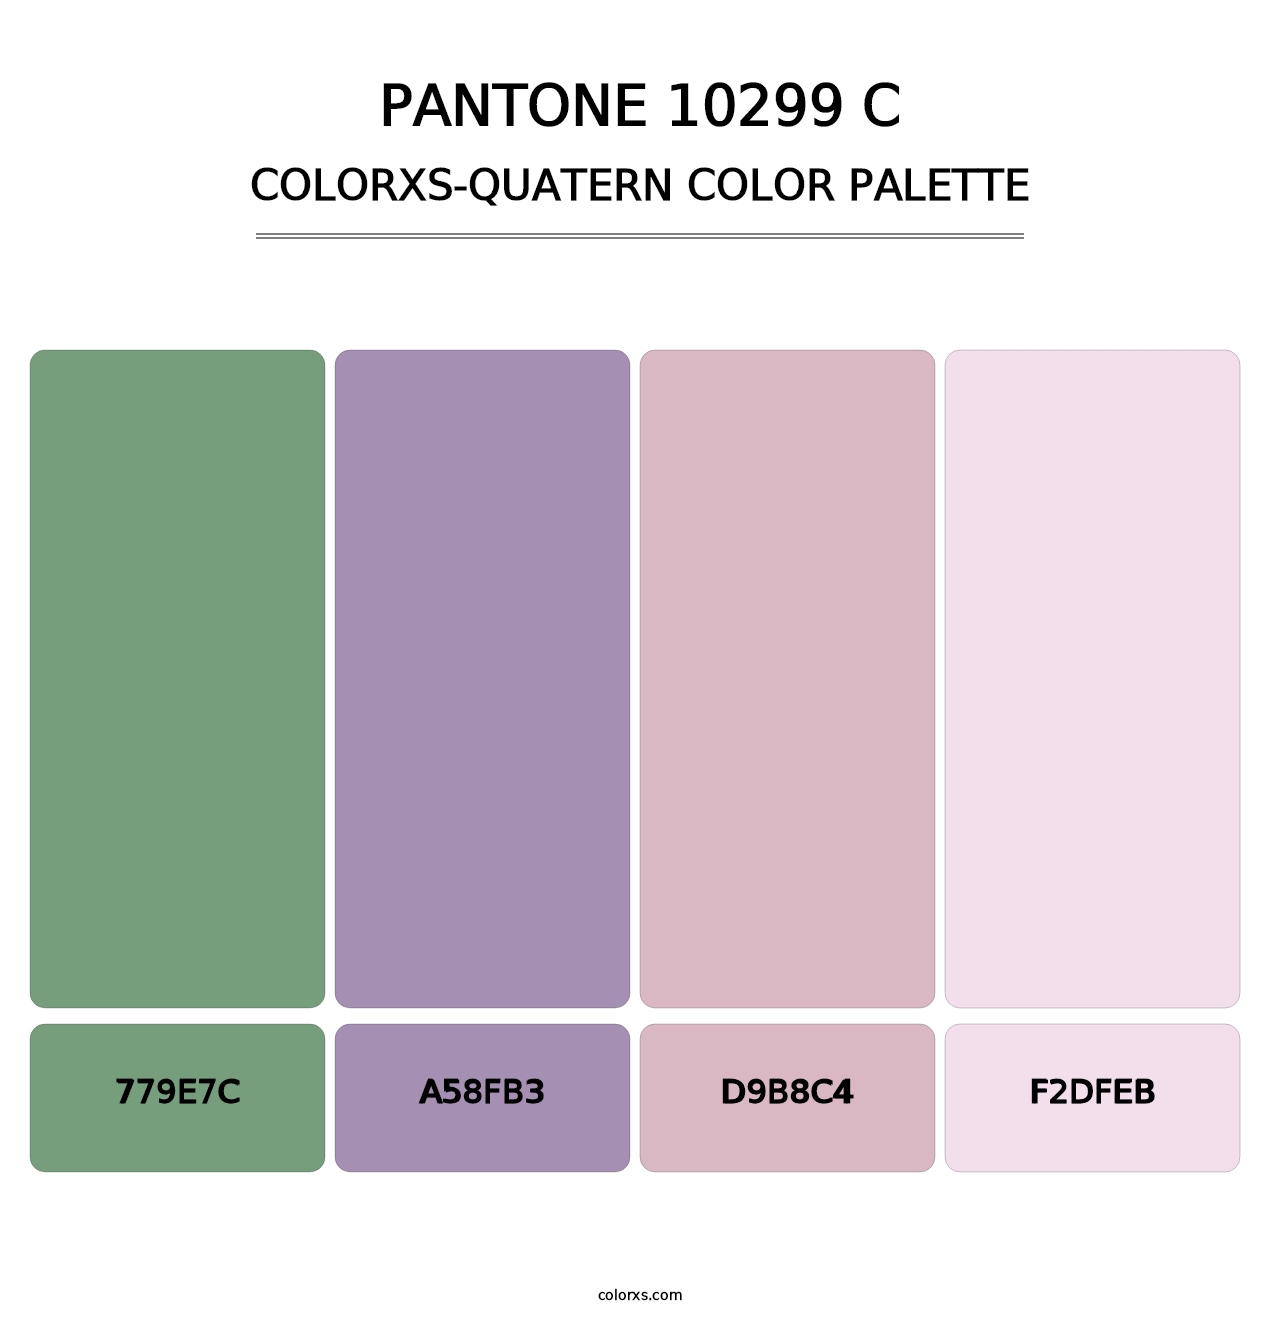 PANTONE 10299 C - Colorxs Quatern Palette